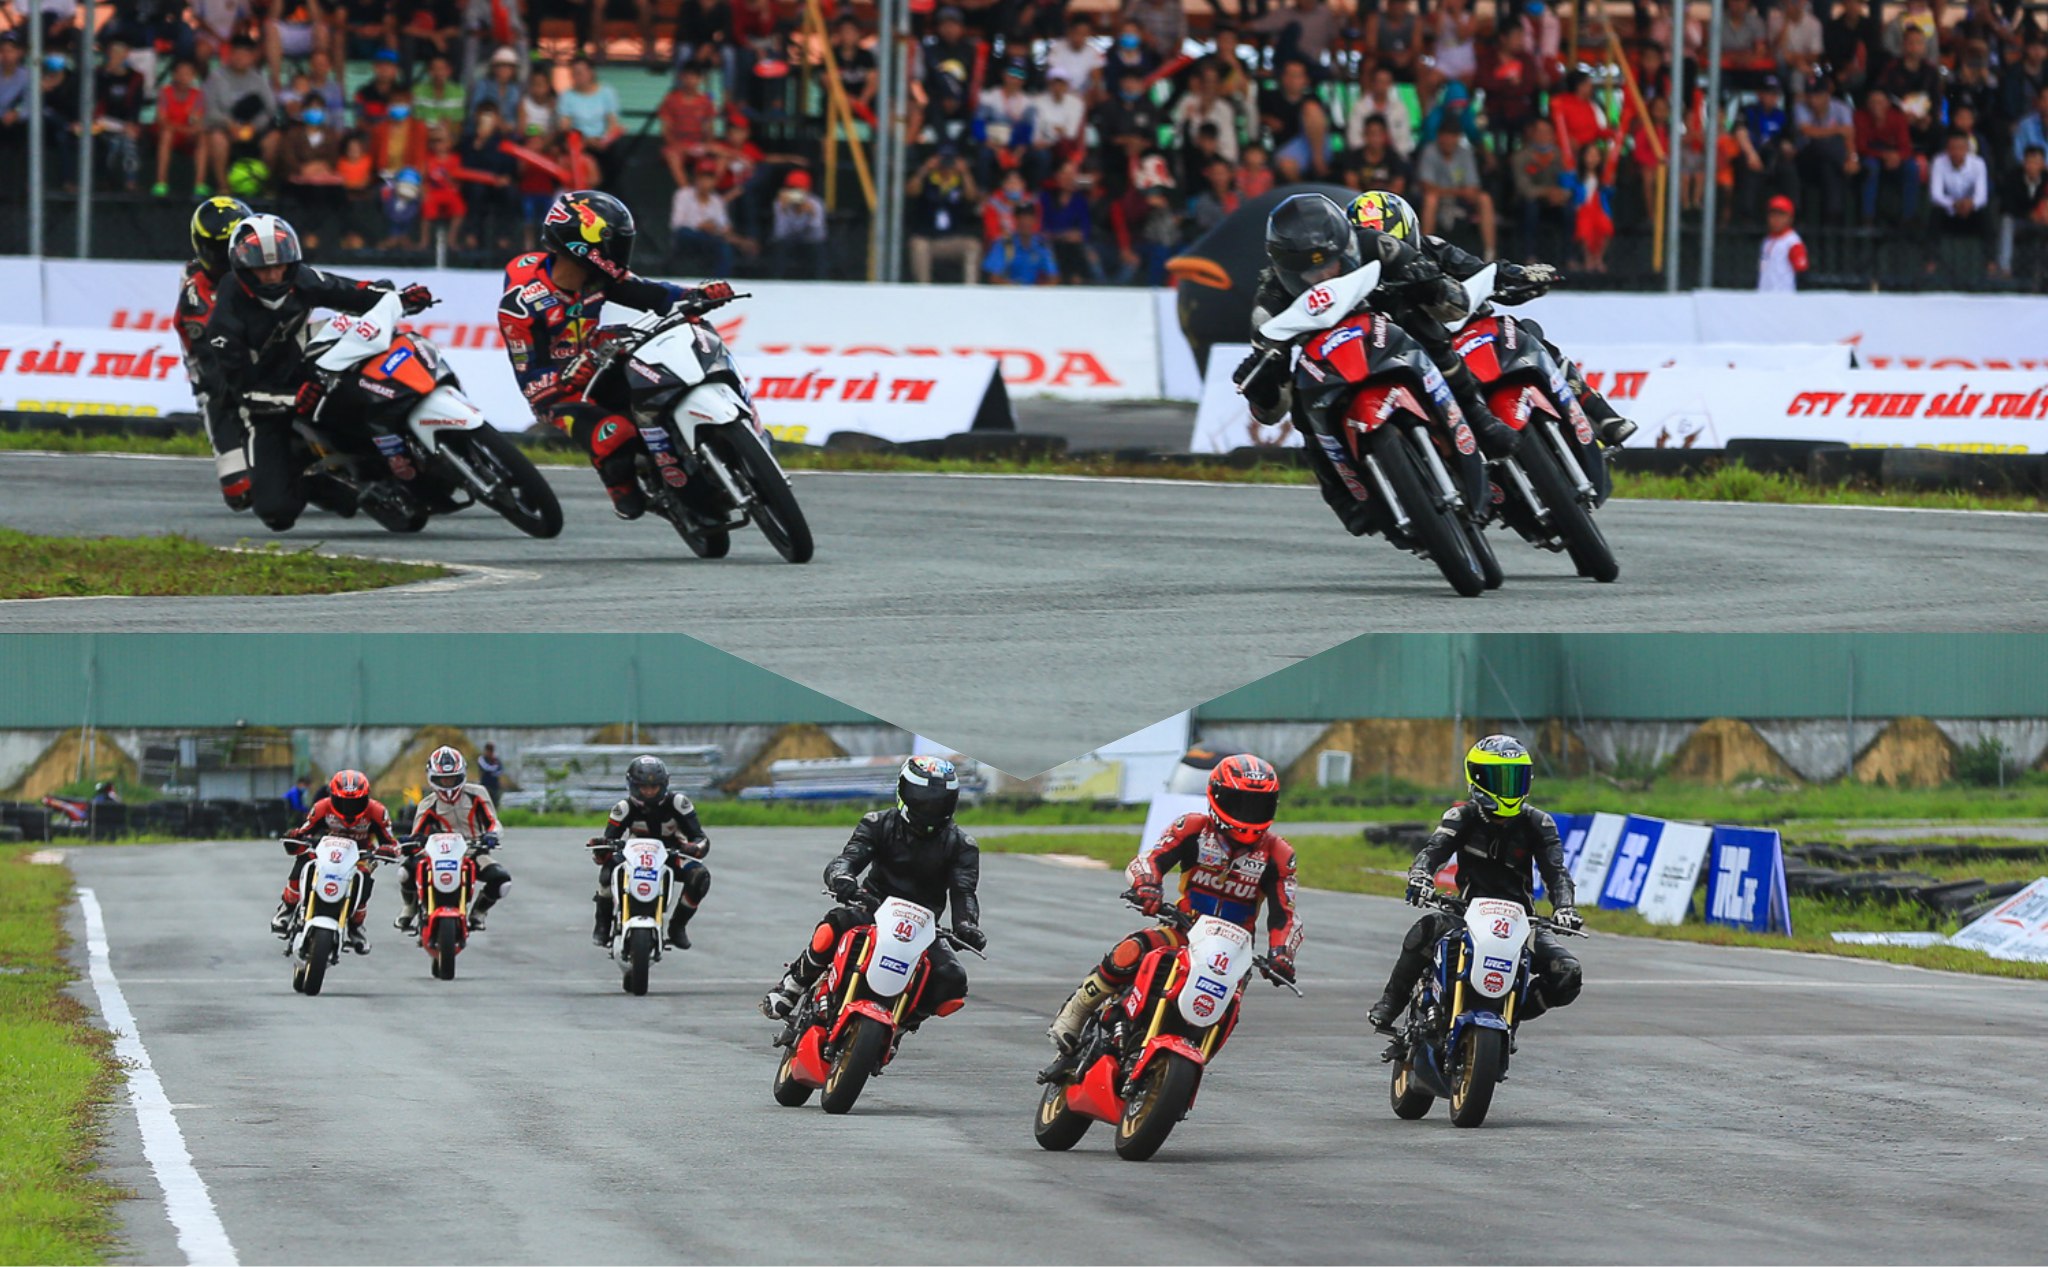 [QC] Chặng 1 Giải đua xe mô tô Việt Nam 2018: Vũ điệu của tốc độ